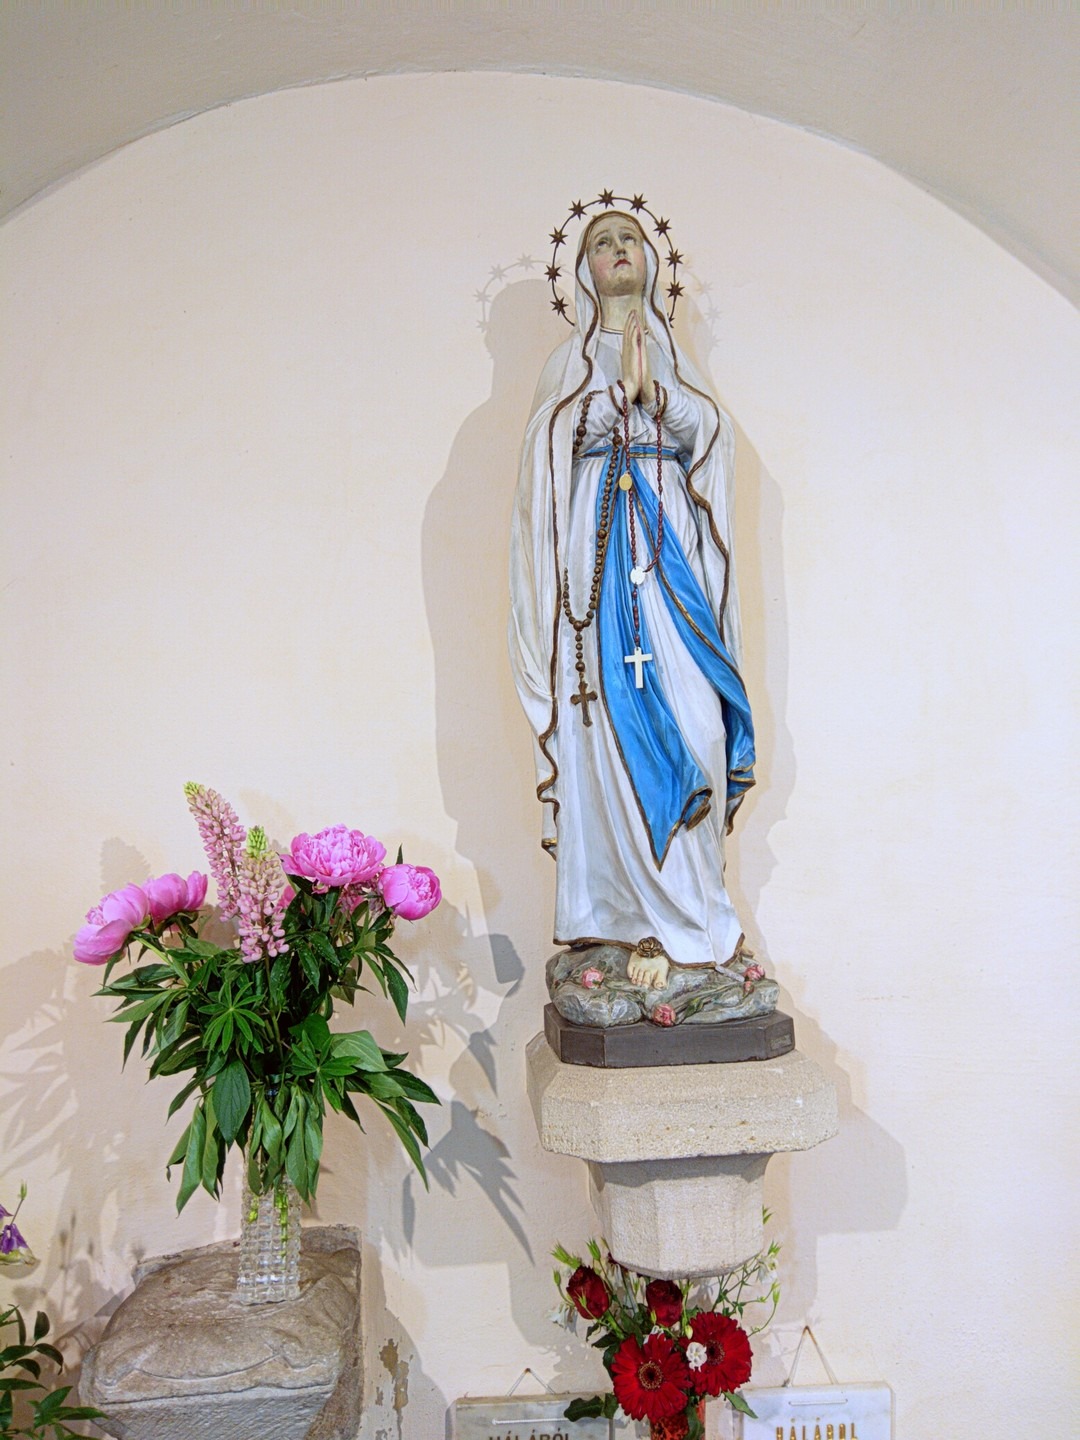 Mária oltár a karzat alatt